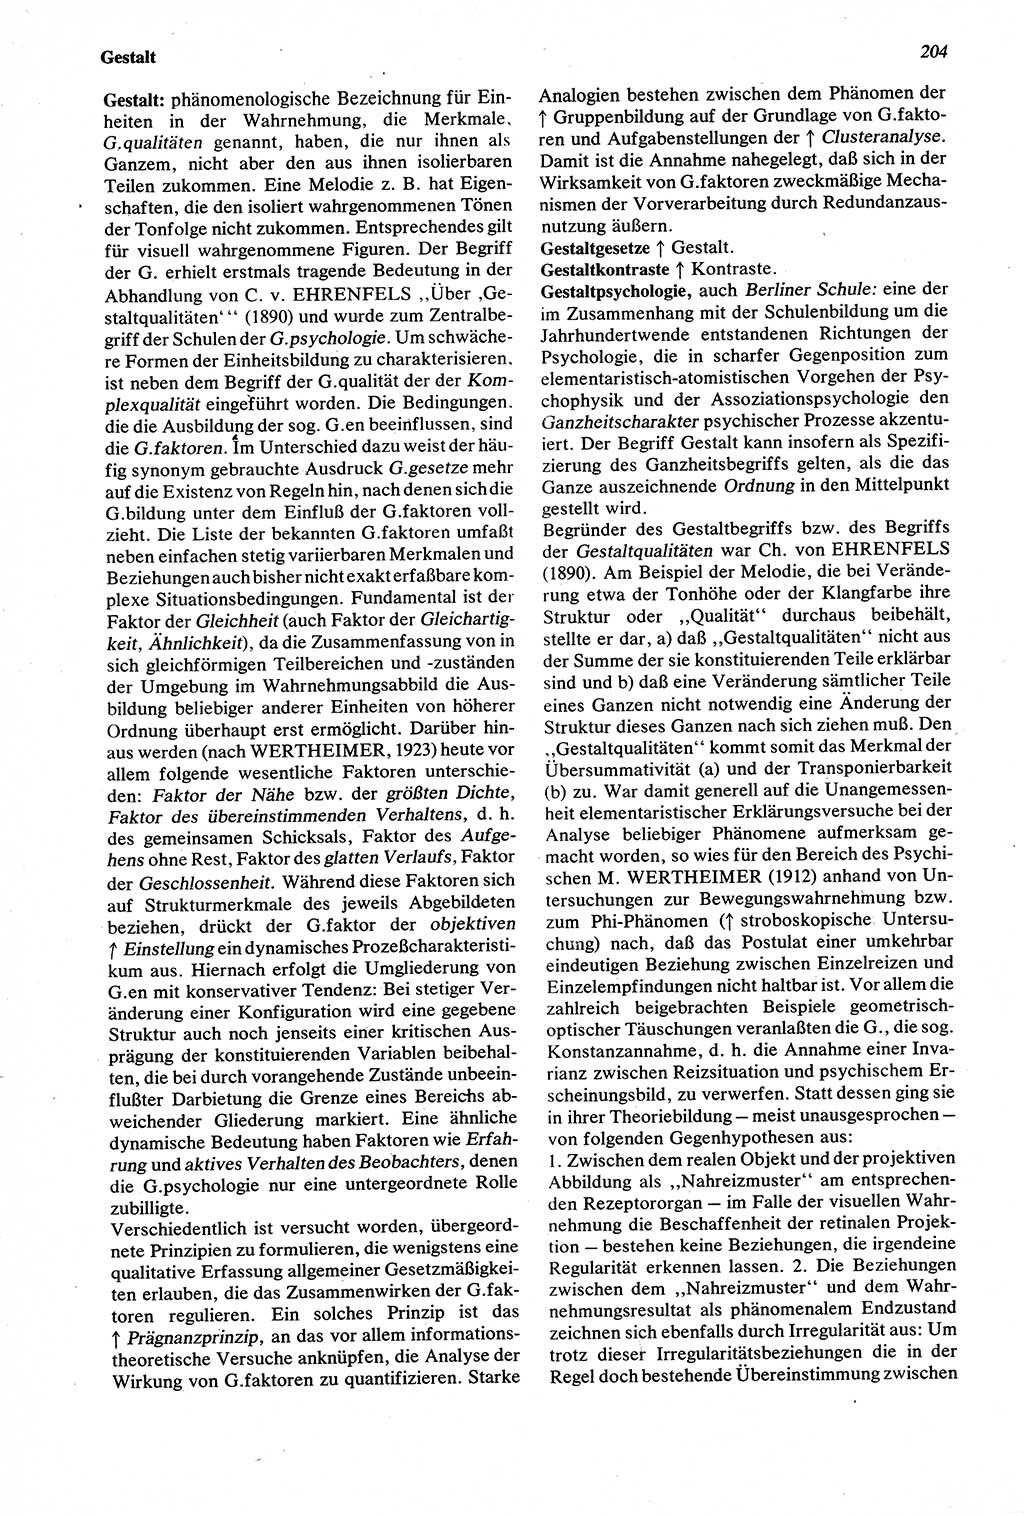 Wörterbuch der Psychologie [Deutsche Demokratische Republik (DDR)] 1976, Seite 204 (Wb. Psych. DDR 1976, S. 204)